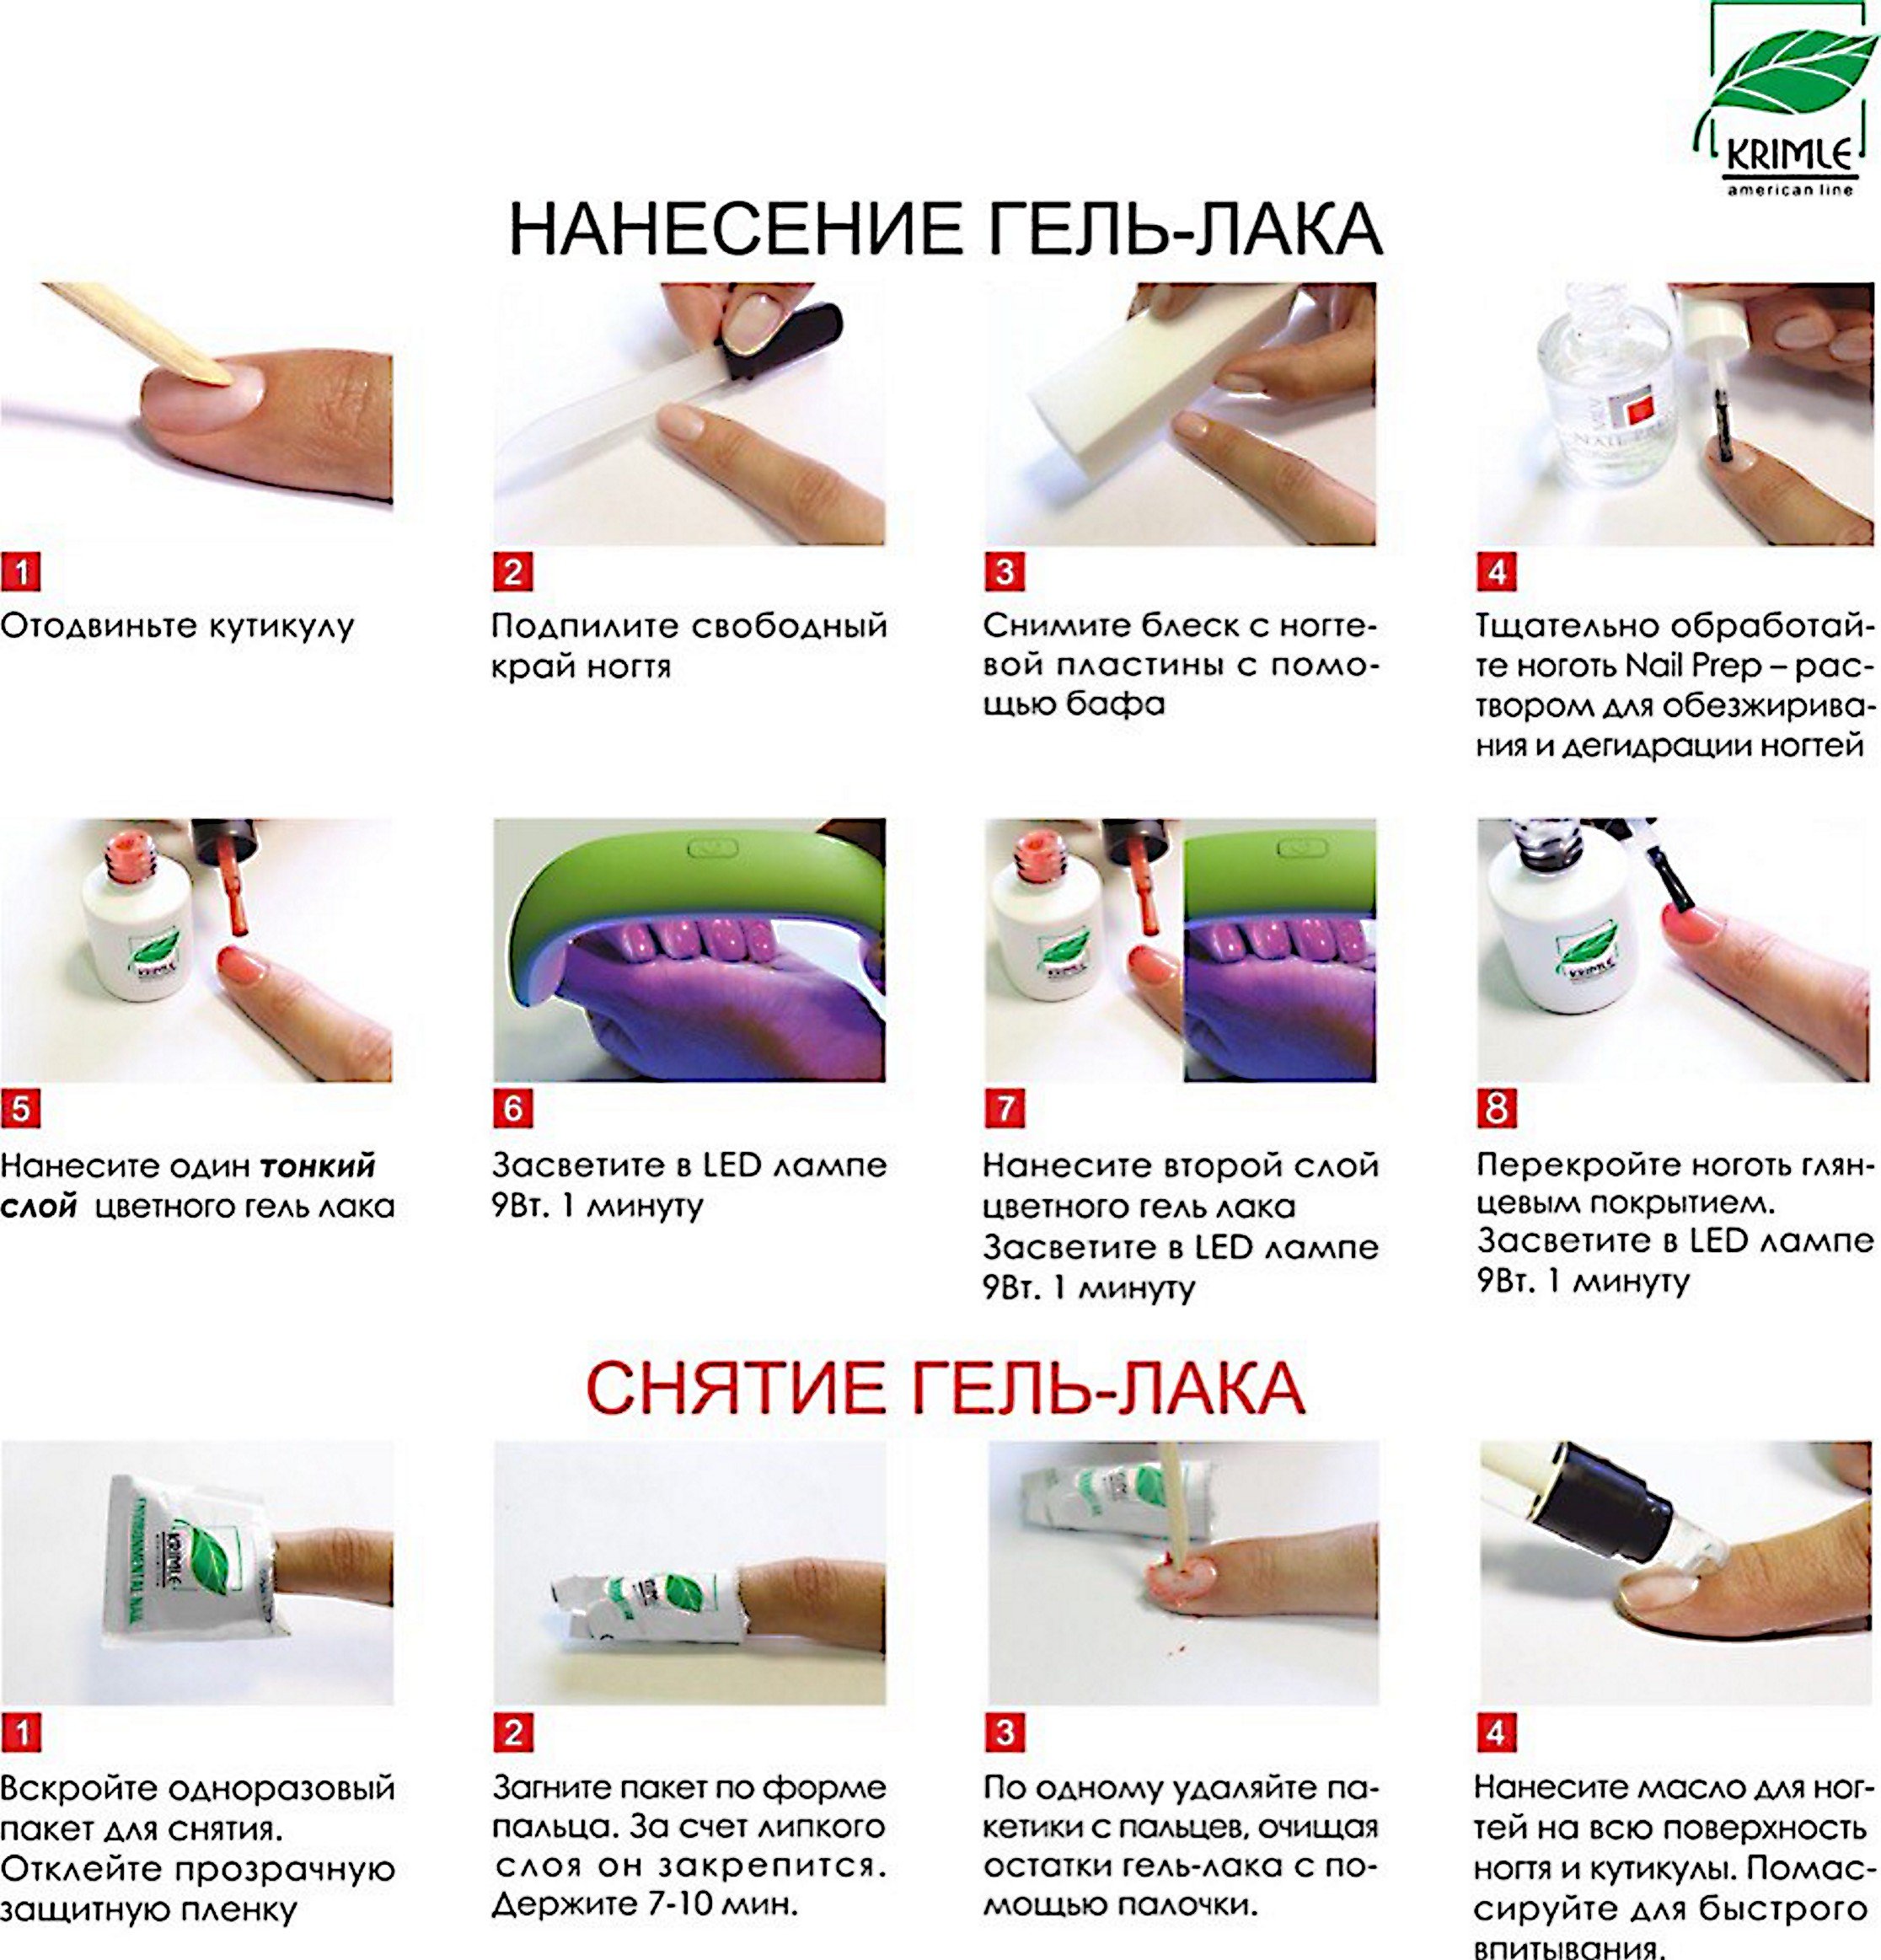 Антисептики для рук: применение, правила нанесения при маникюре и педикюре